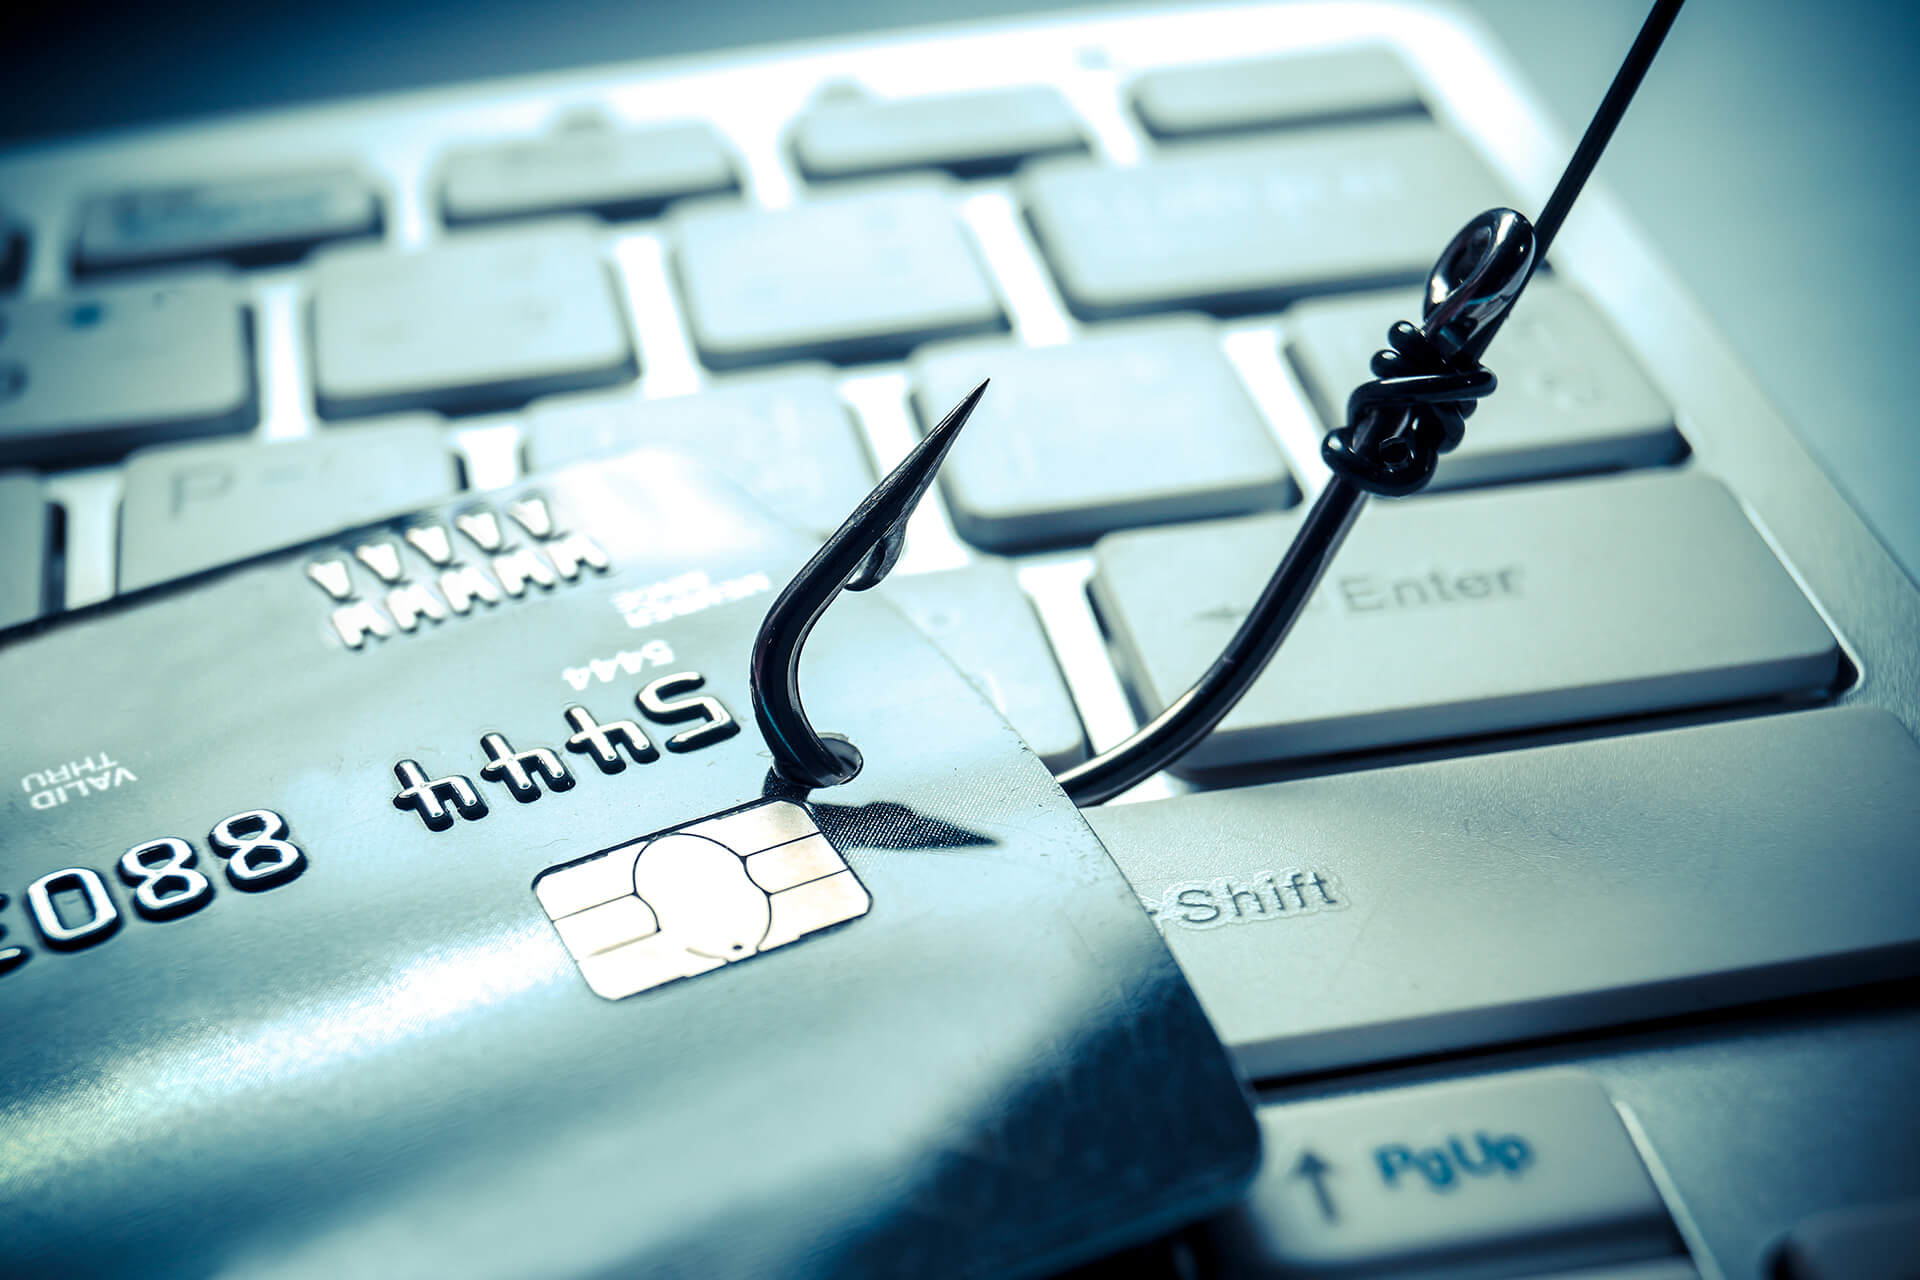 Phishing i kako se zaštititi?